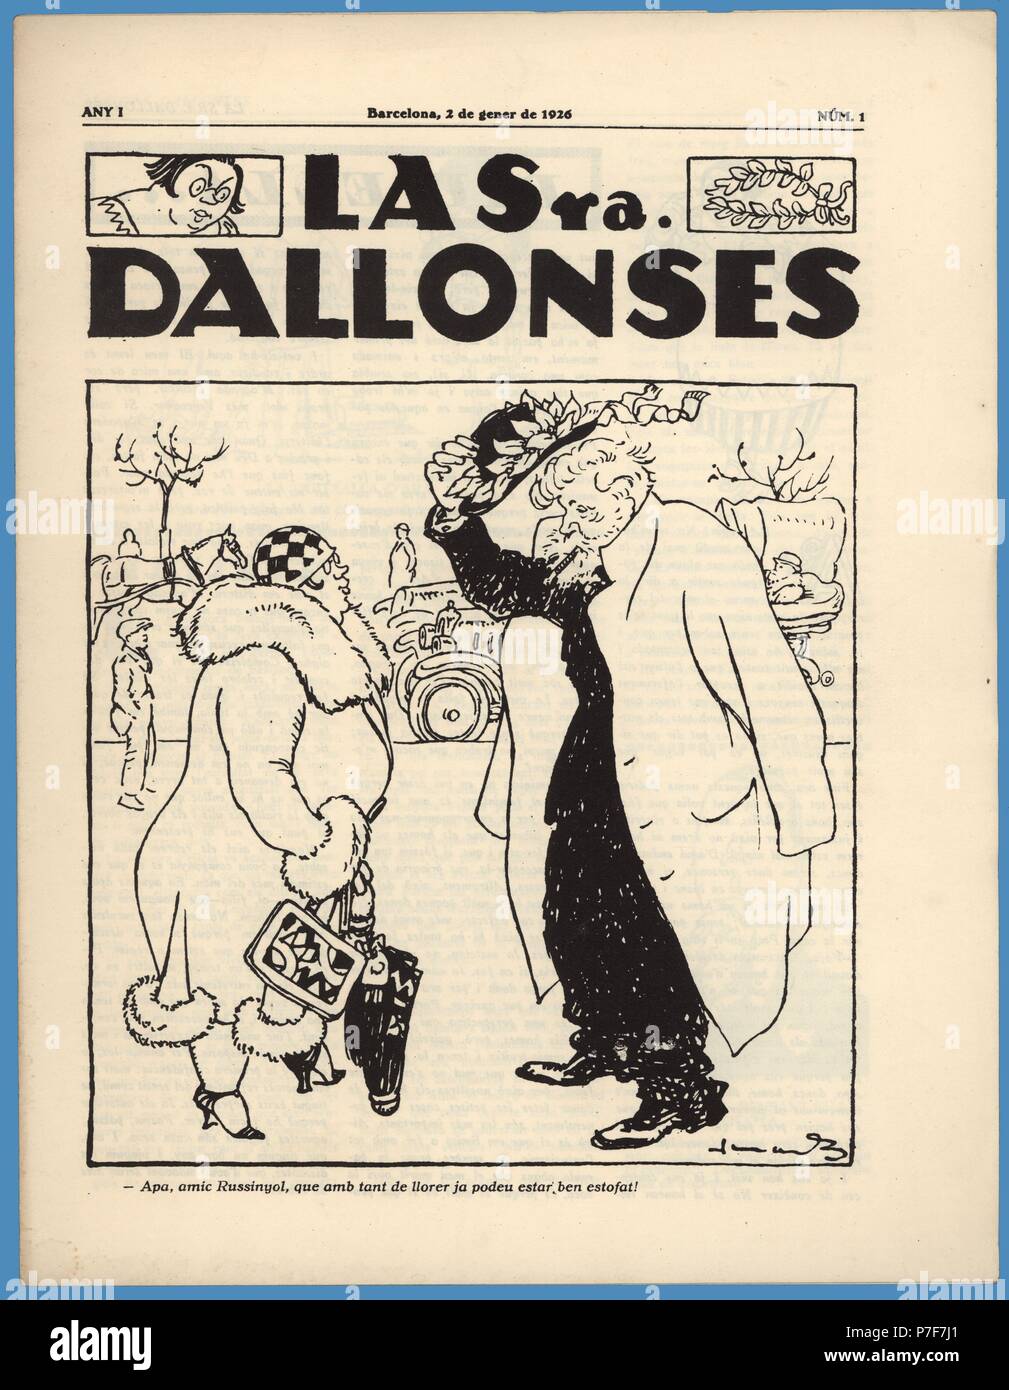 Portada de la revista humorística La Senyora Dallonses, número uno, editada en Barcelona, enero de 1926. Stock Photo